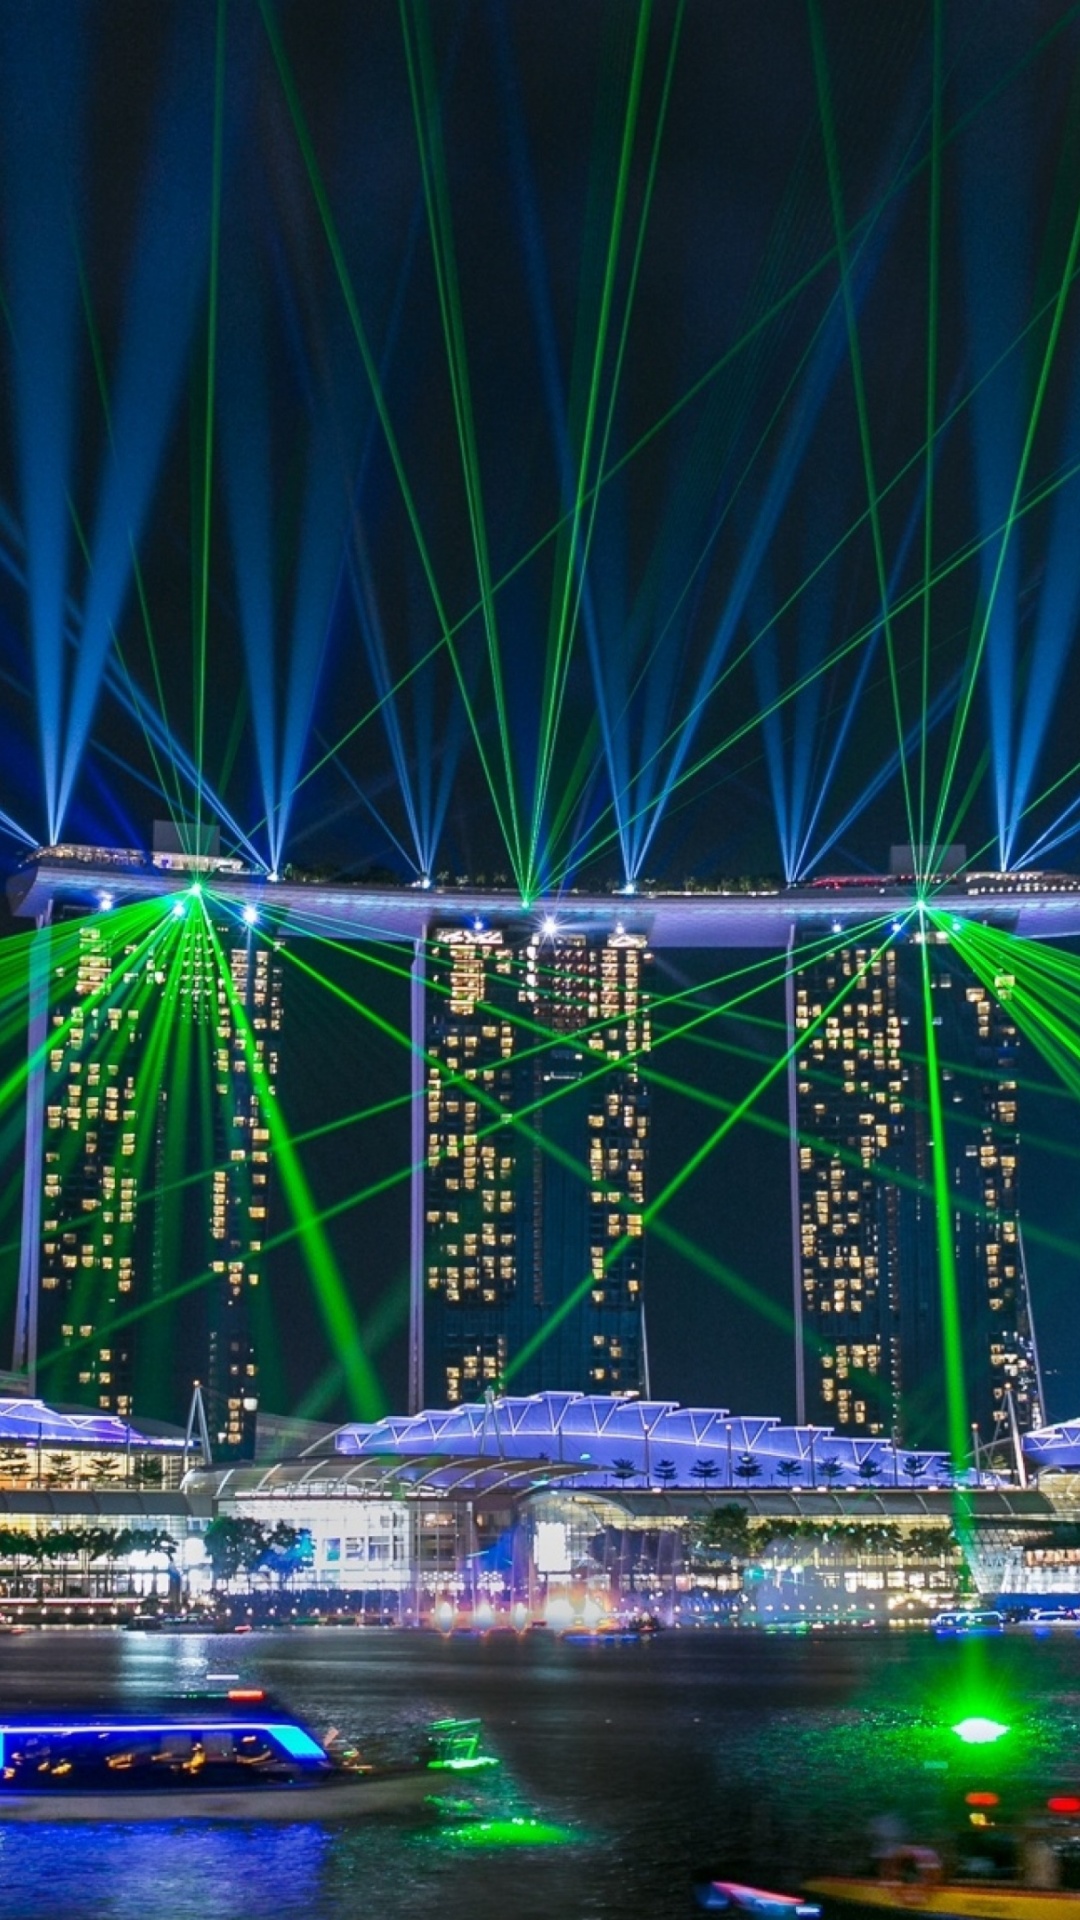 Laser show near Marina Bay Sands Hotel in Singapore screenshot #1 1080x1920